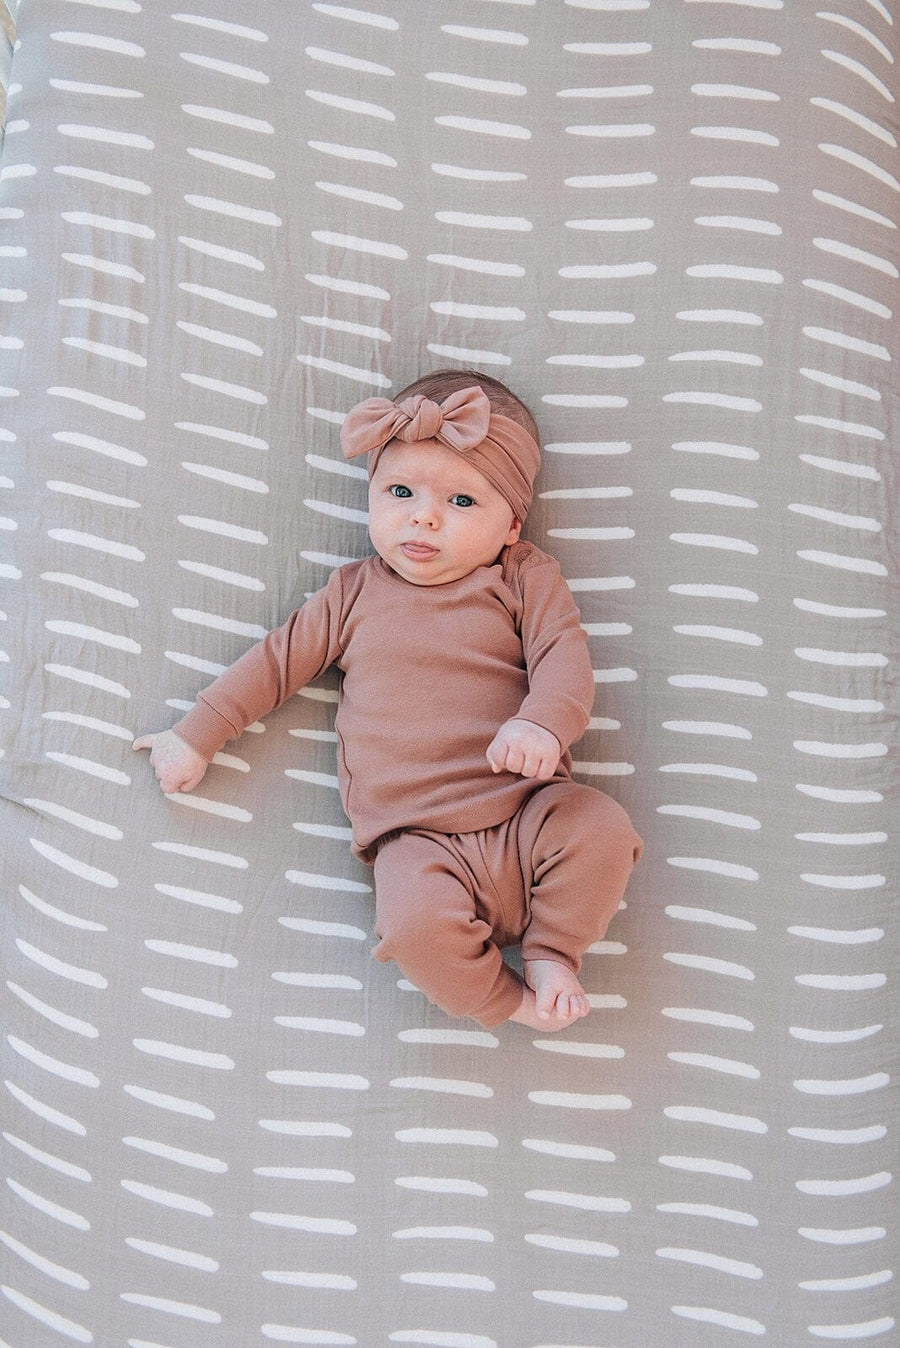 Grey Dash Crib Sheet Mebie Baby 